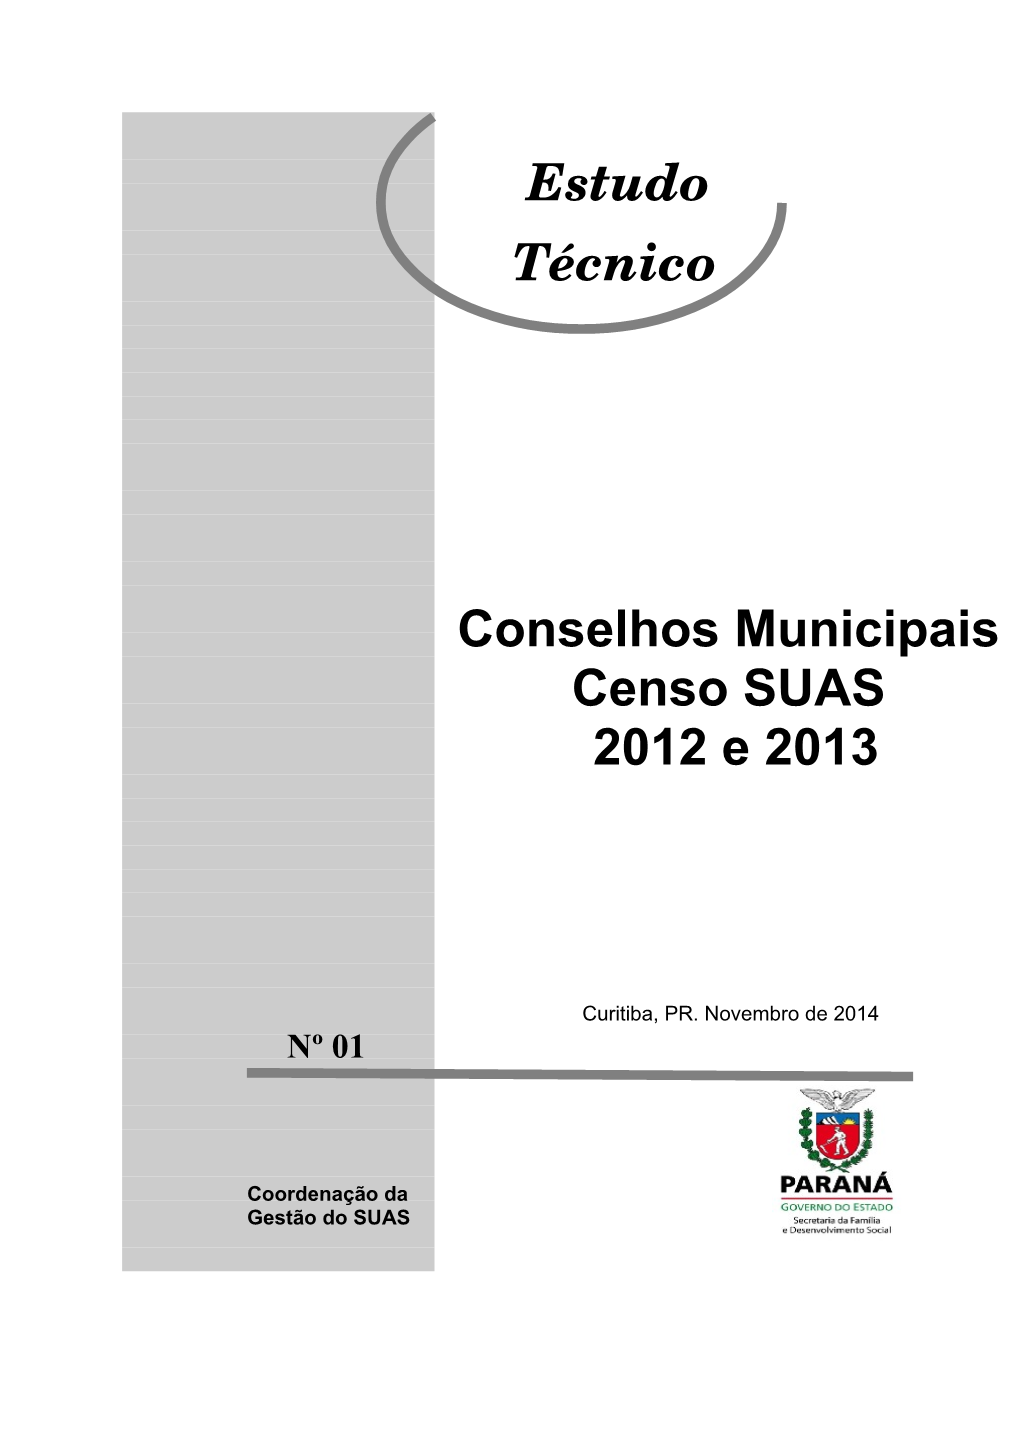 Conselhos Municipais Censo SUAS 2012 E 2013